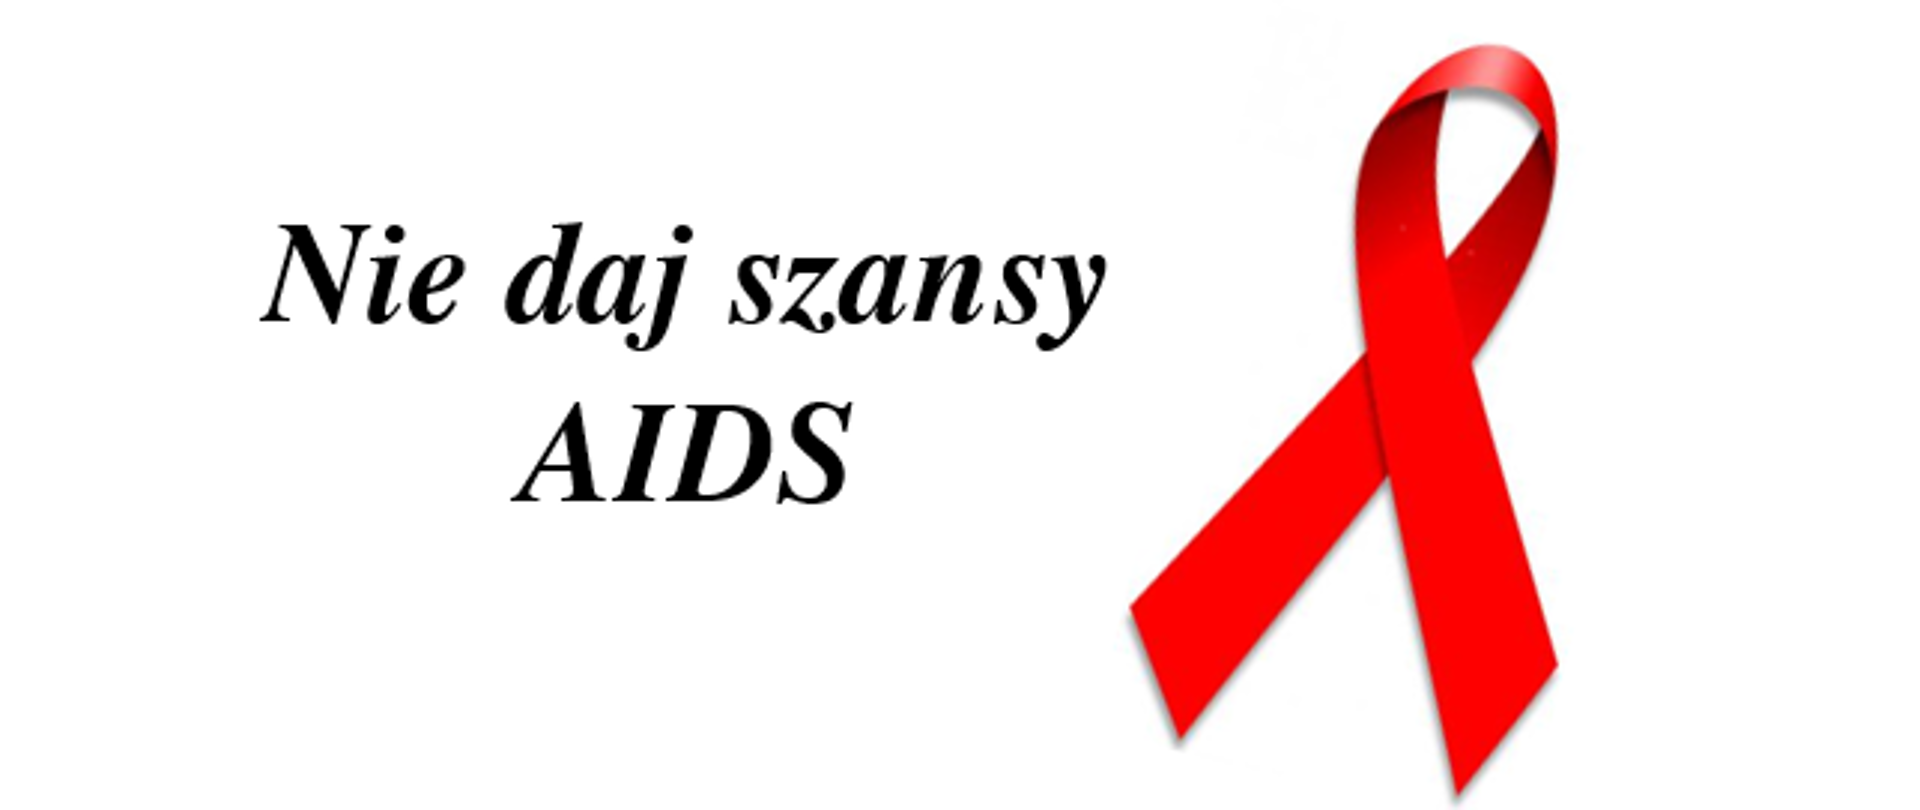 Czerwona wstążeczka i napis: Nie daj szansy AIDS